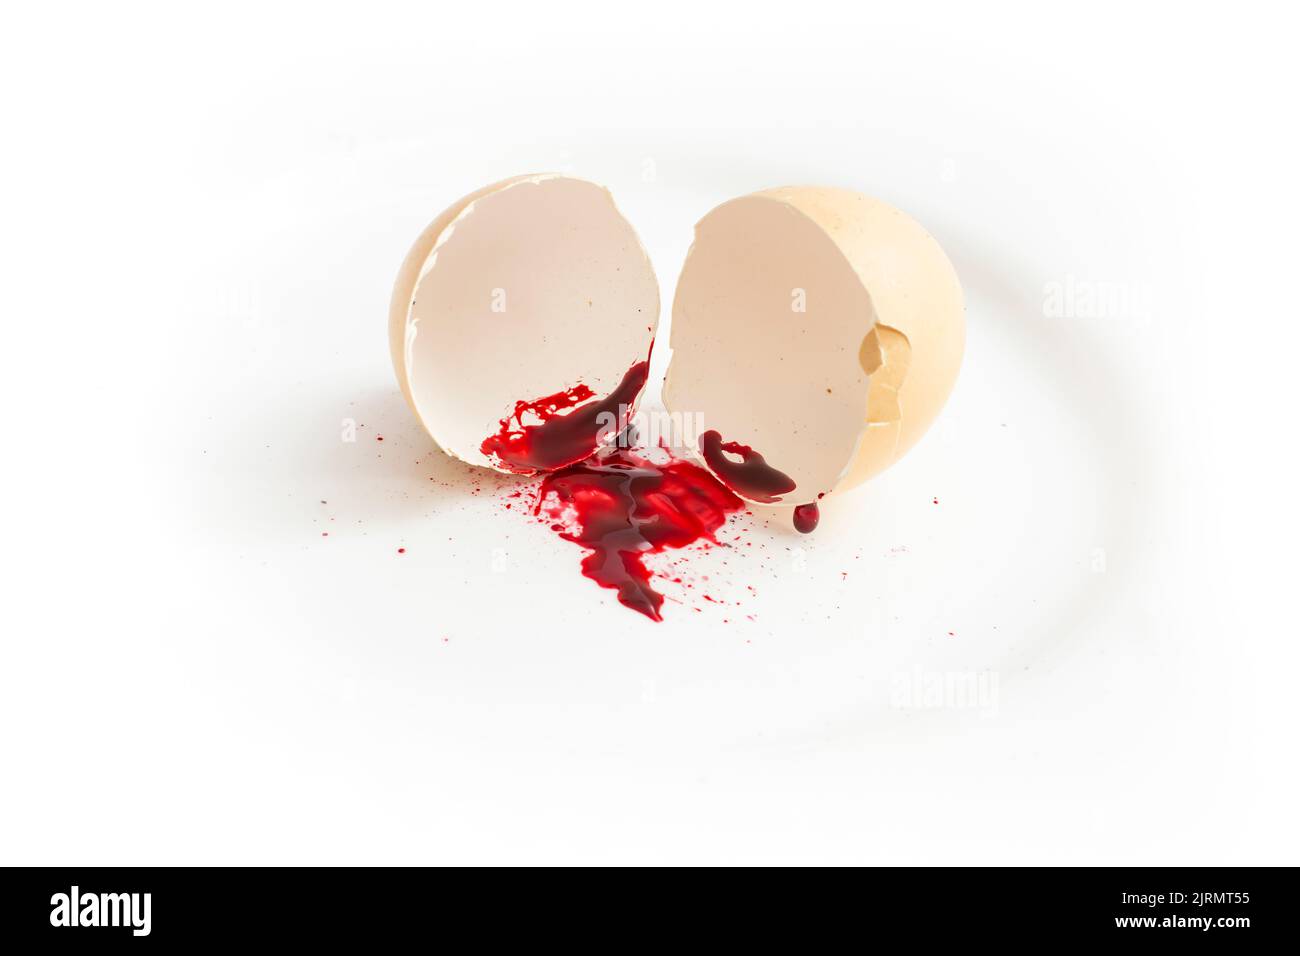 Zerrissene Eierschale mit einer Blutspur, isoliert auf Weiß. Abtreibungskonzept Stockfoto